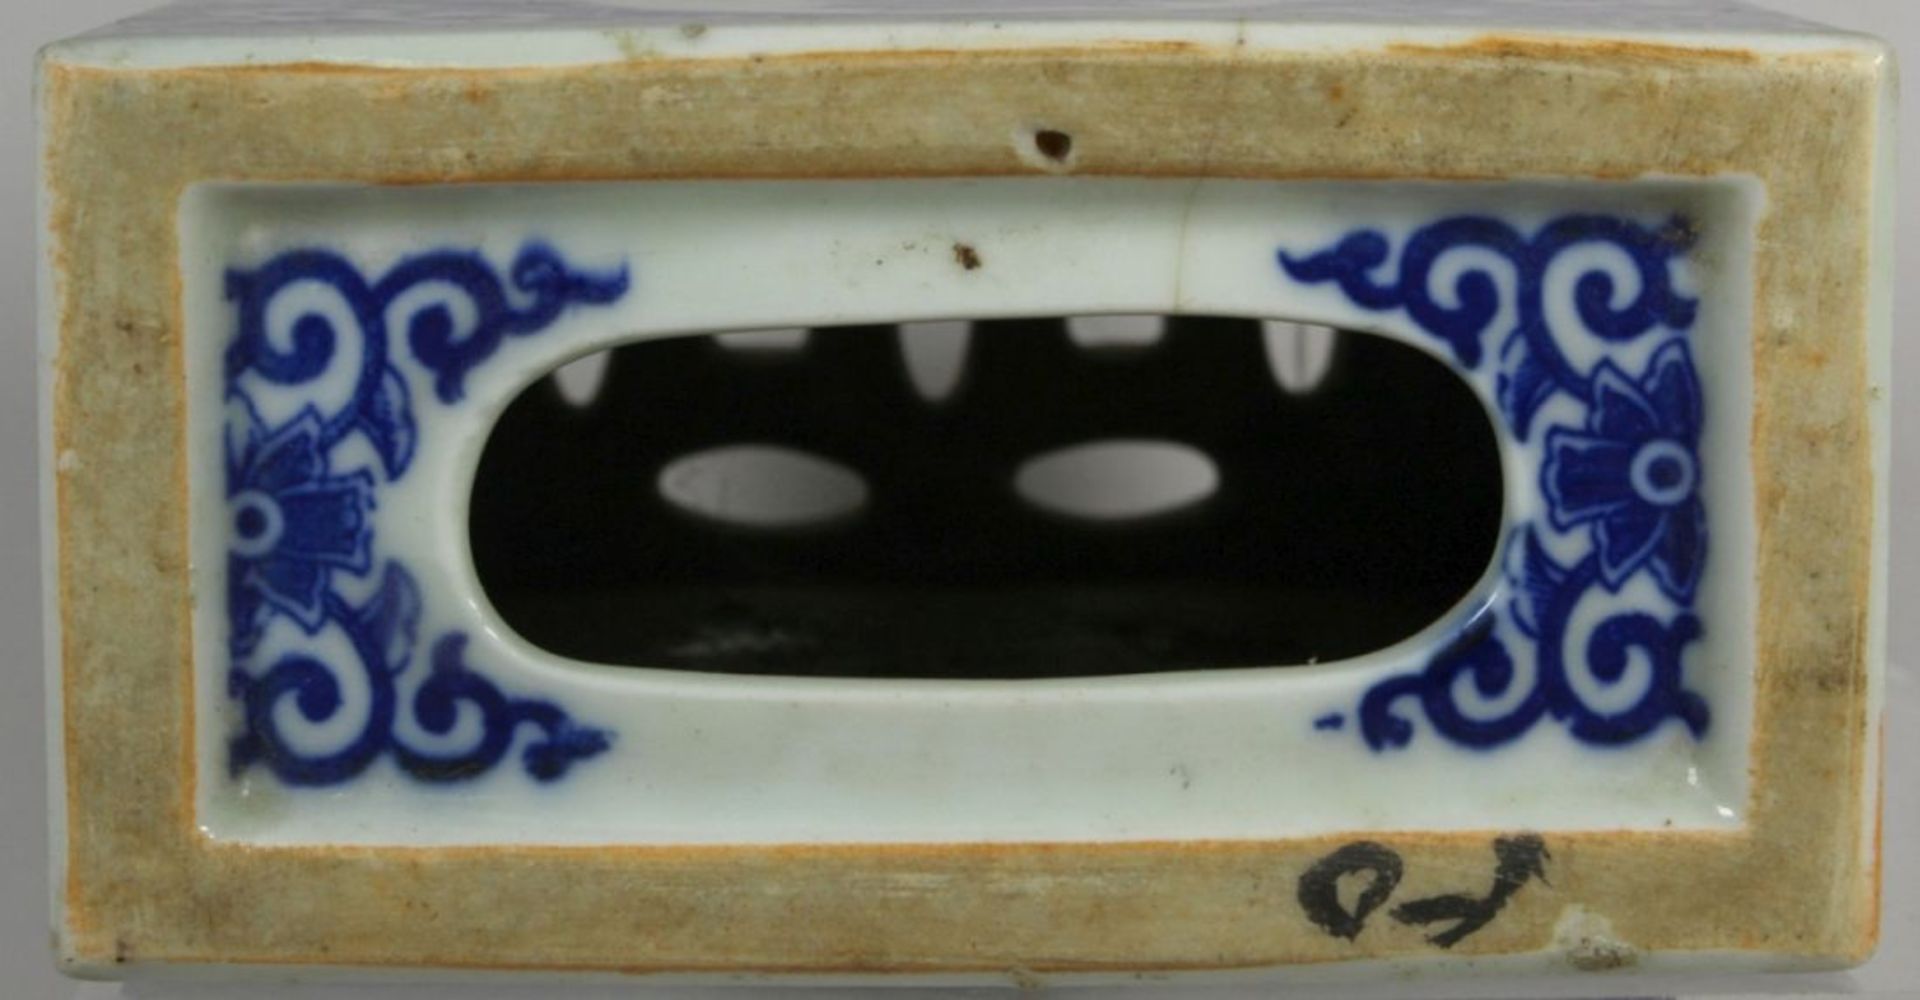 Porzellan-Nackenstütze bzw. Handwärmer, China, 1. Hälfte 20. Jh., quaderförmiger Korpus,2-seitig - Bild 2 aus 2